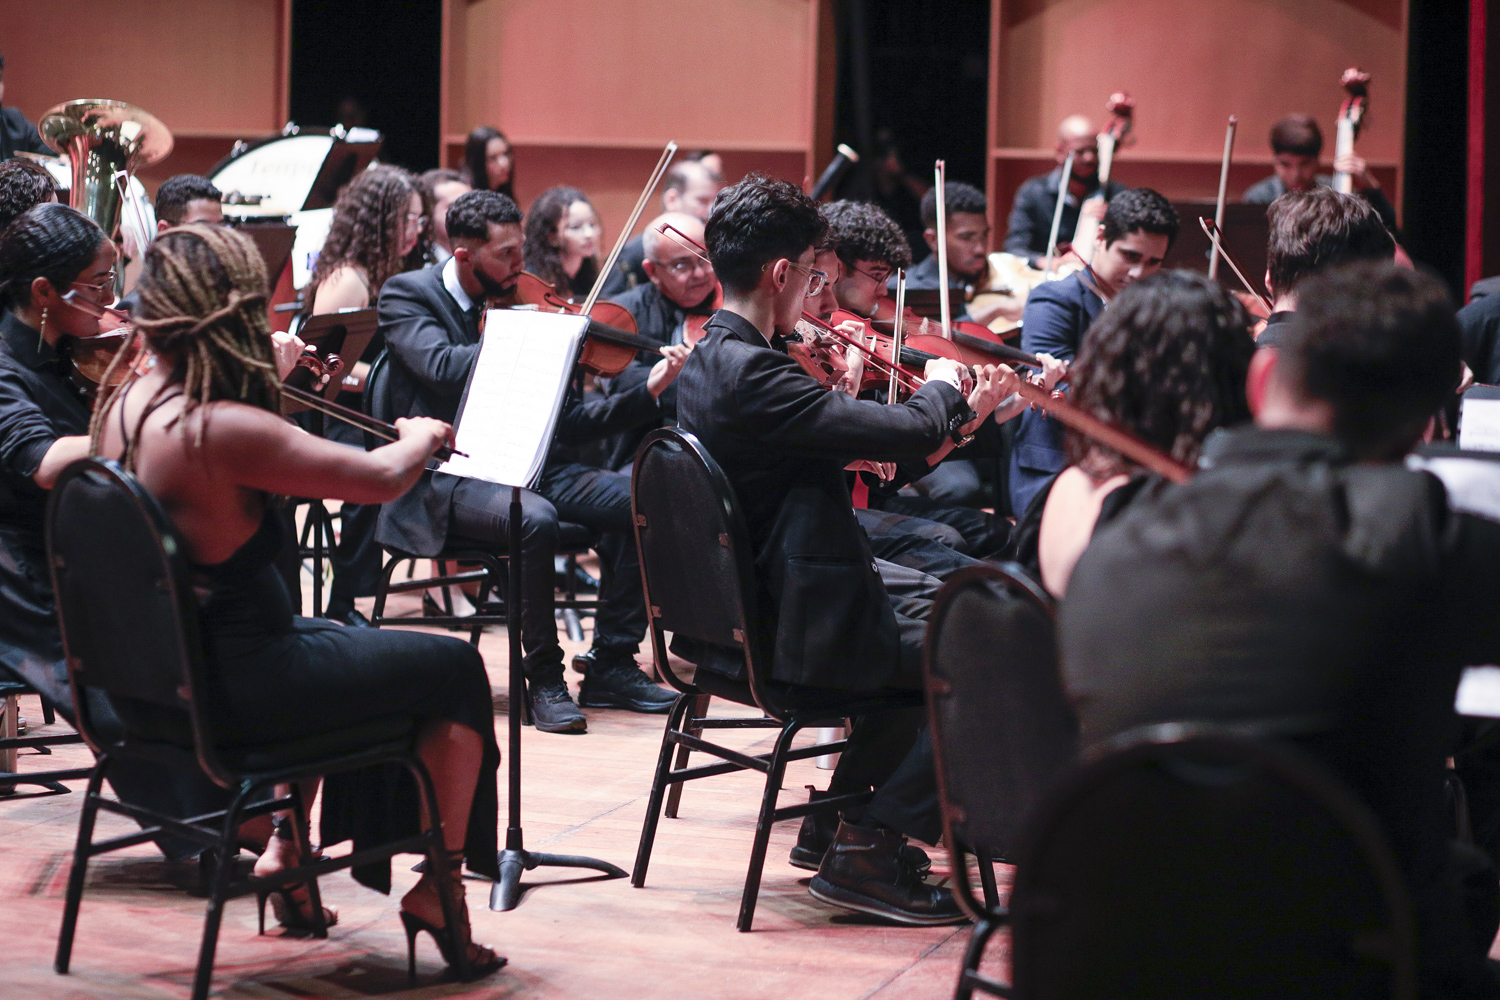 Orquestra Sinfônica da UFS também fez parte das comemorações de aniversário. (foto: Adilson Andrade/Ascom UFS)